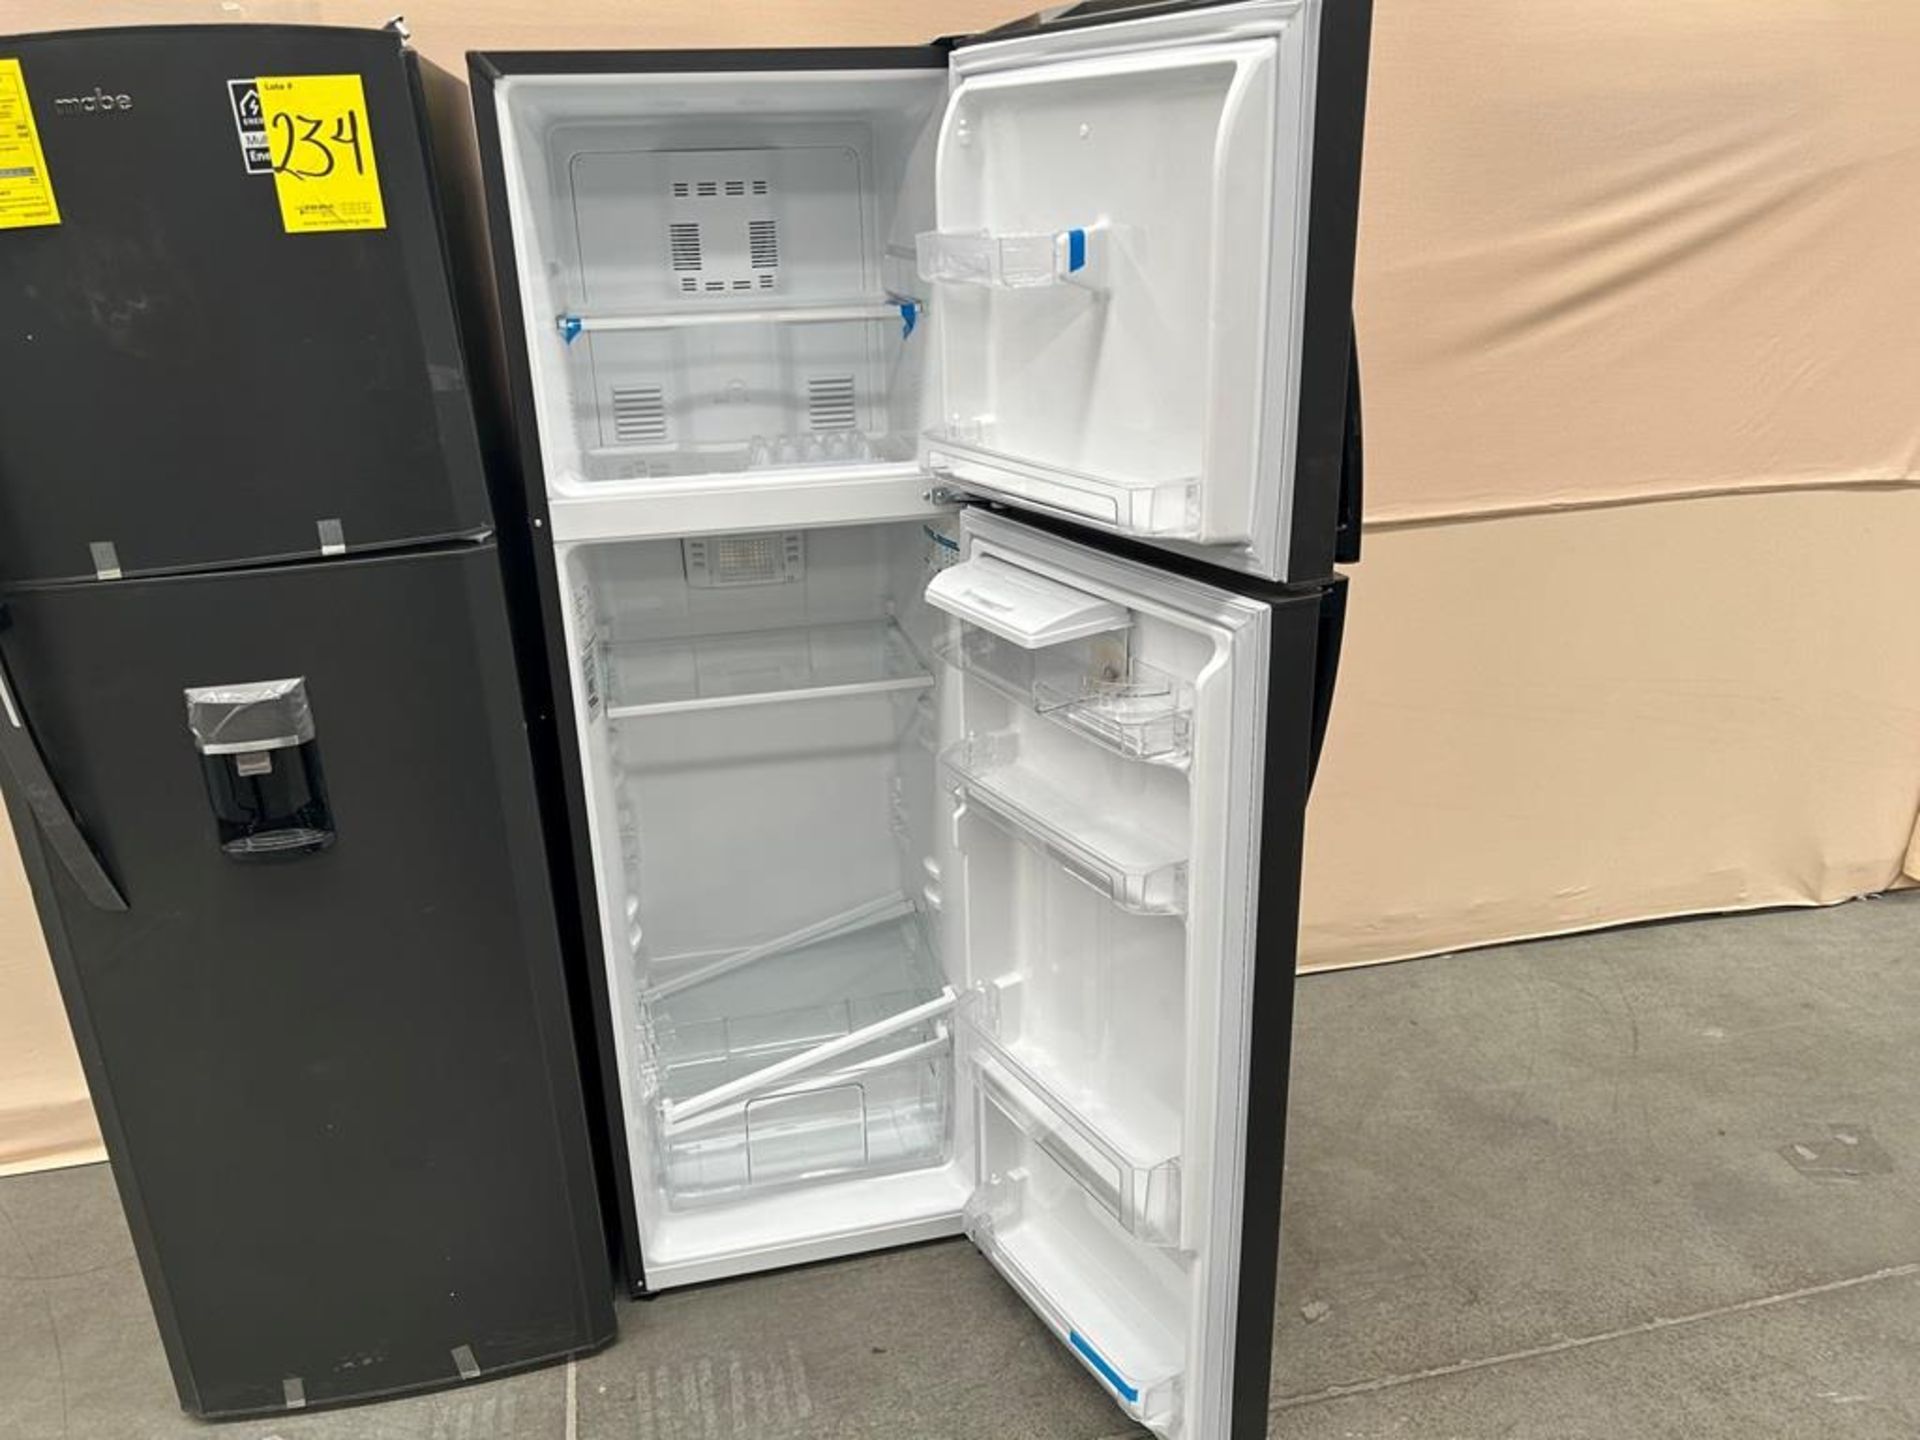 Lote de 2 refrigeradores contiene: Refrigerador con dispensador de agua Marca MABE, Modelo RMA300FJ - Image 4 of 9